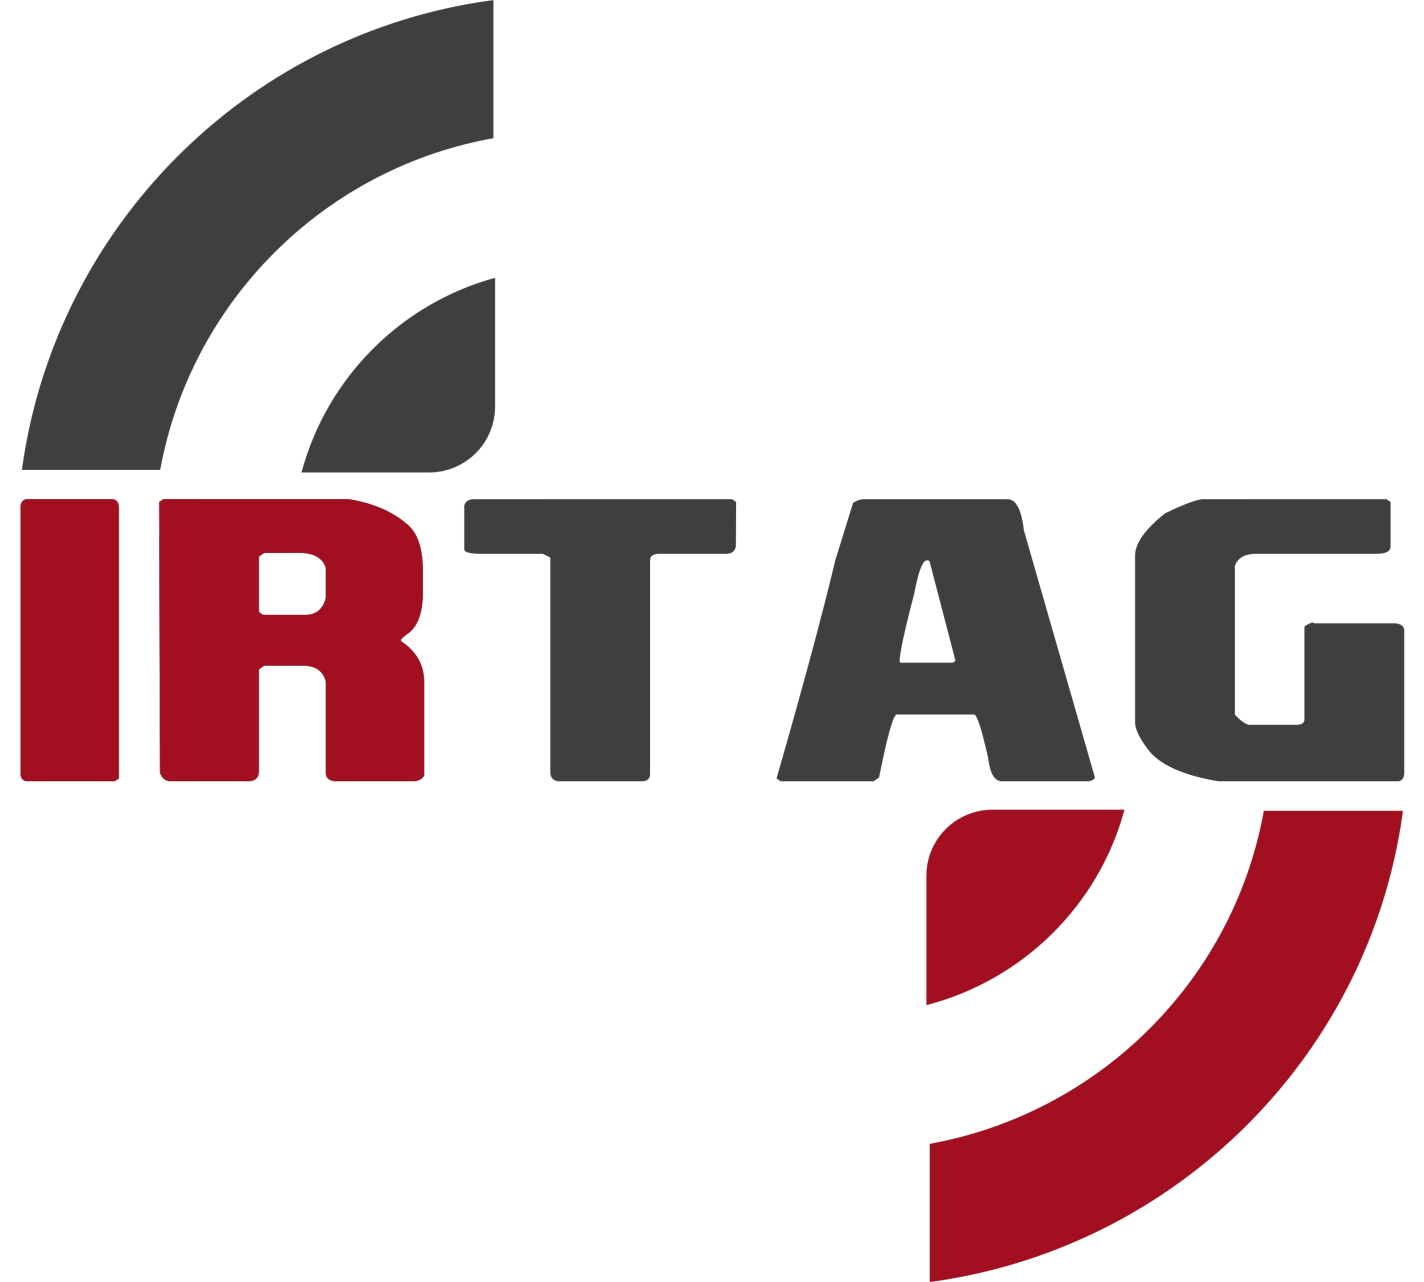 IRTAG logo without background